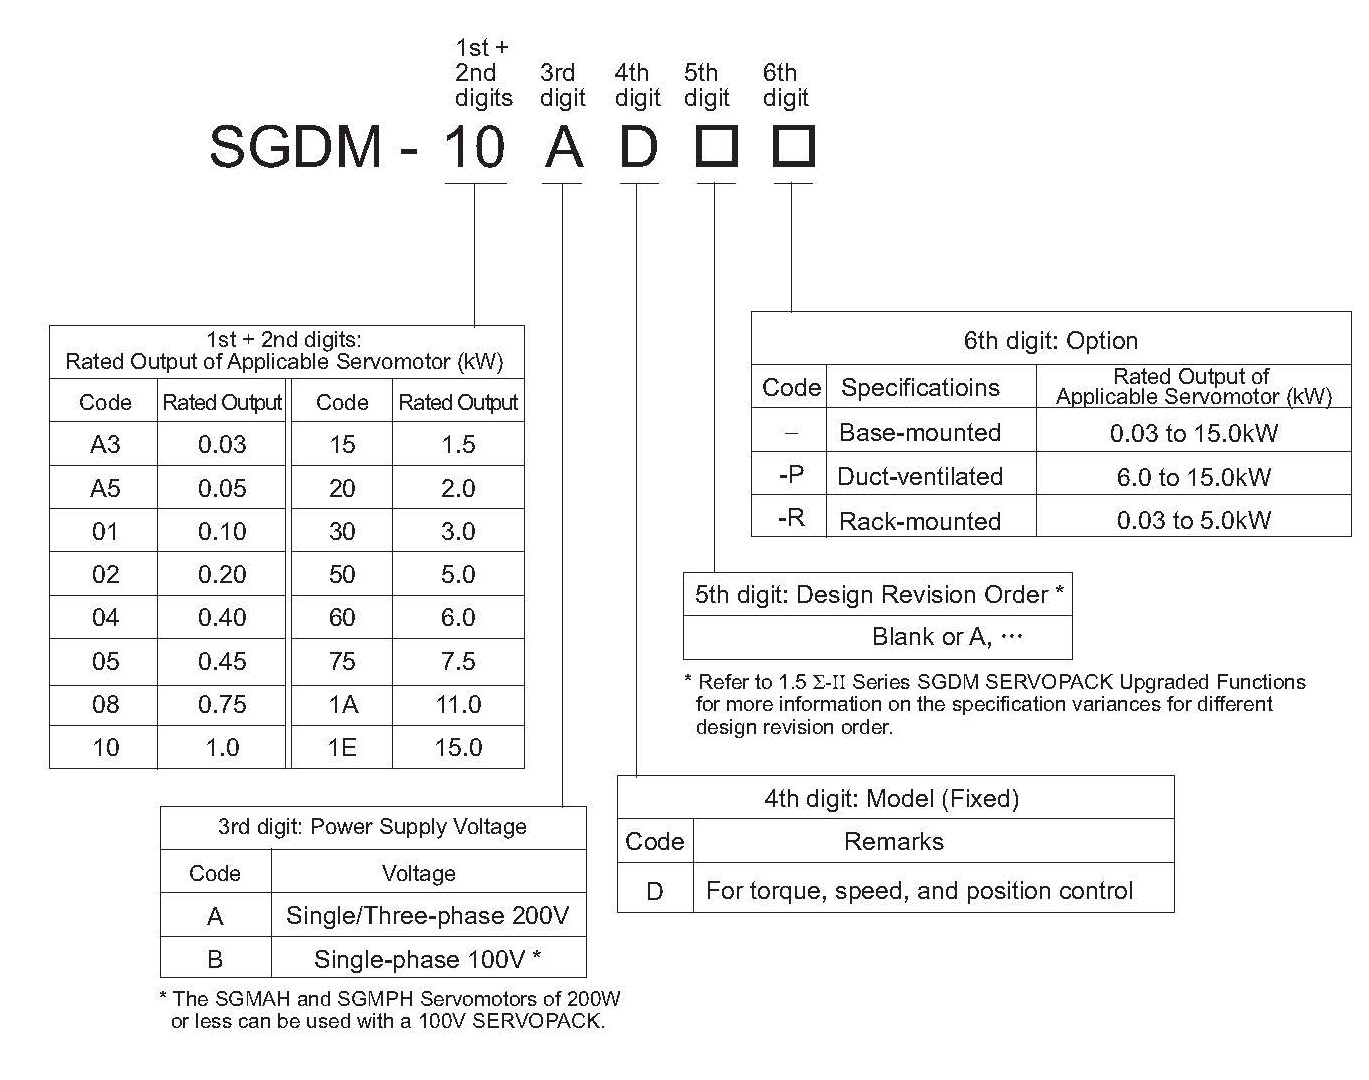 SGDM-01ADA spec